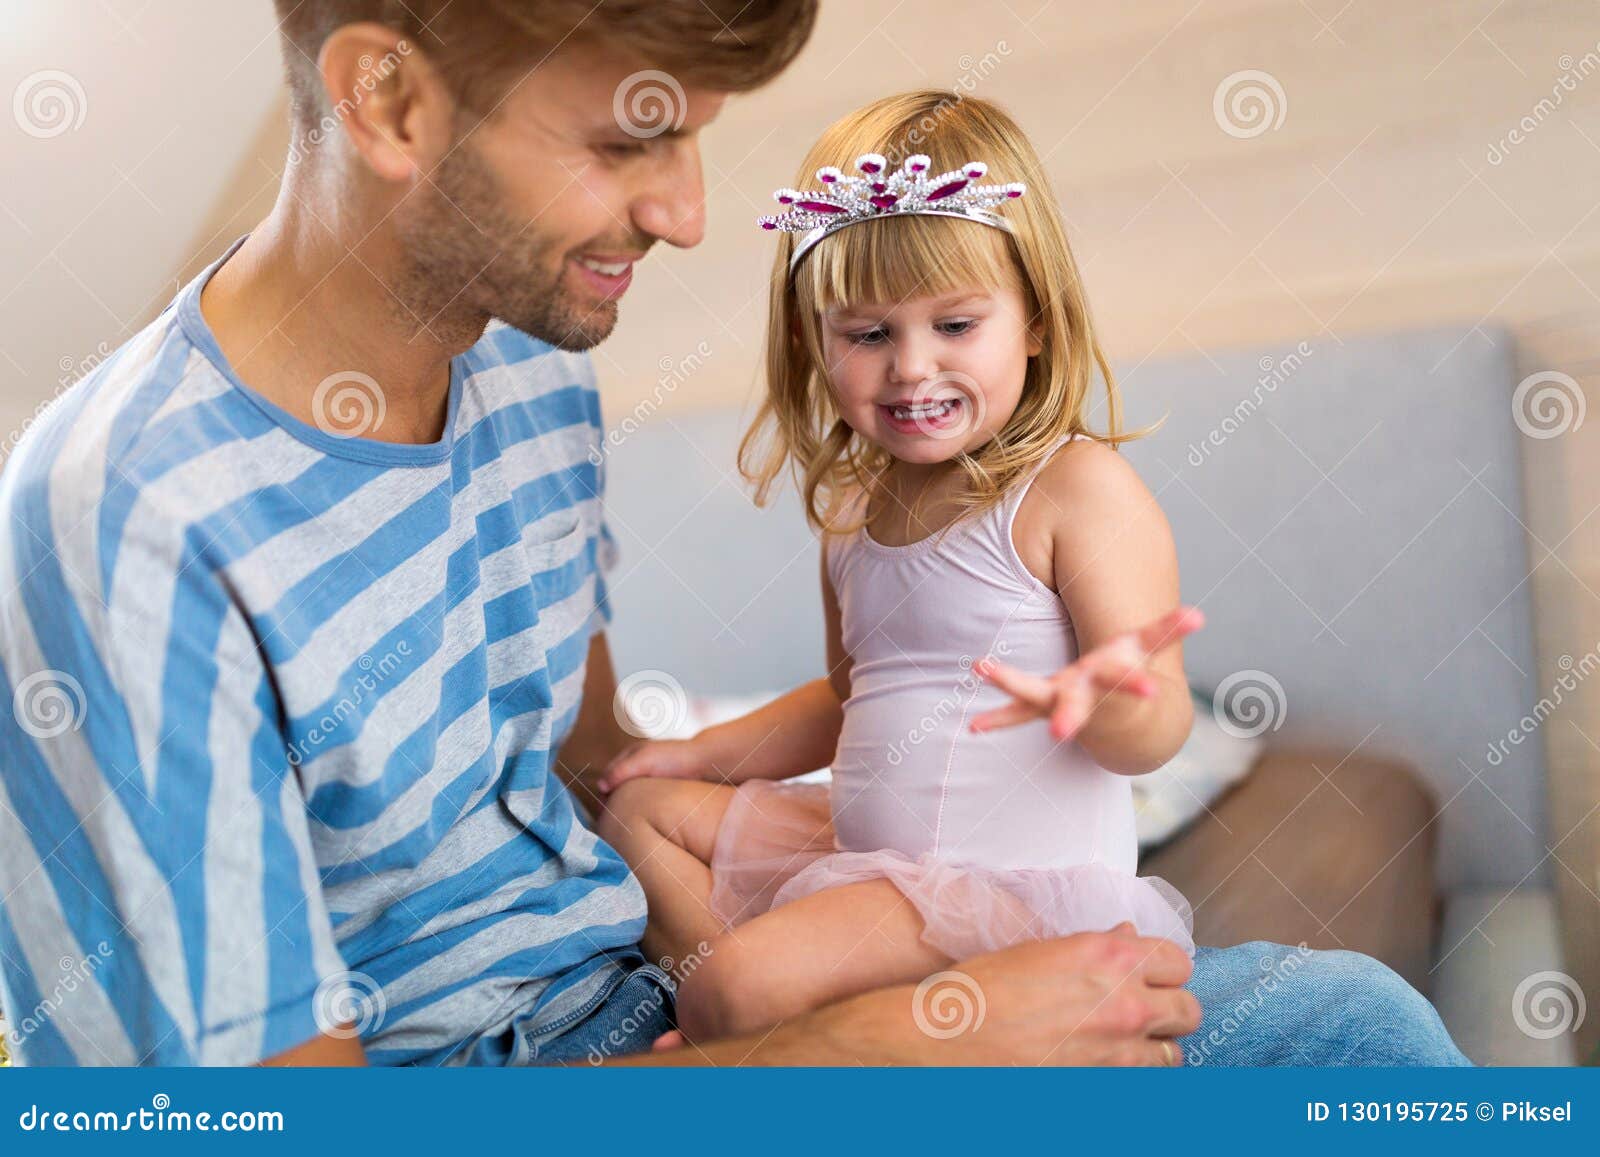 Παιχνίδι πατέρων με την κόρη στο σπίτι. Ευτυχές παιχνίδι πατέρων με την κόρη στο σπίτι